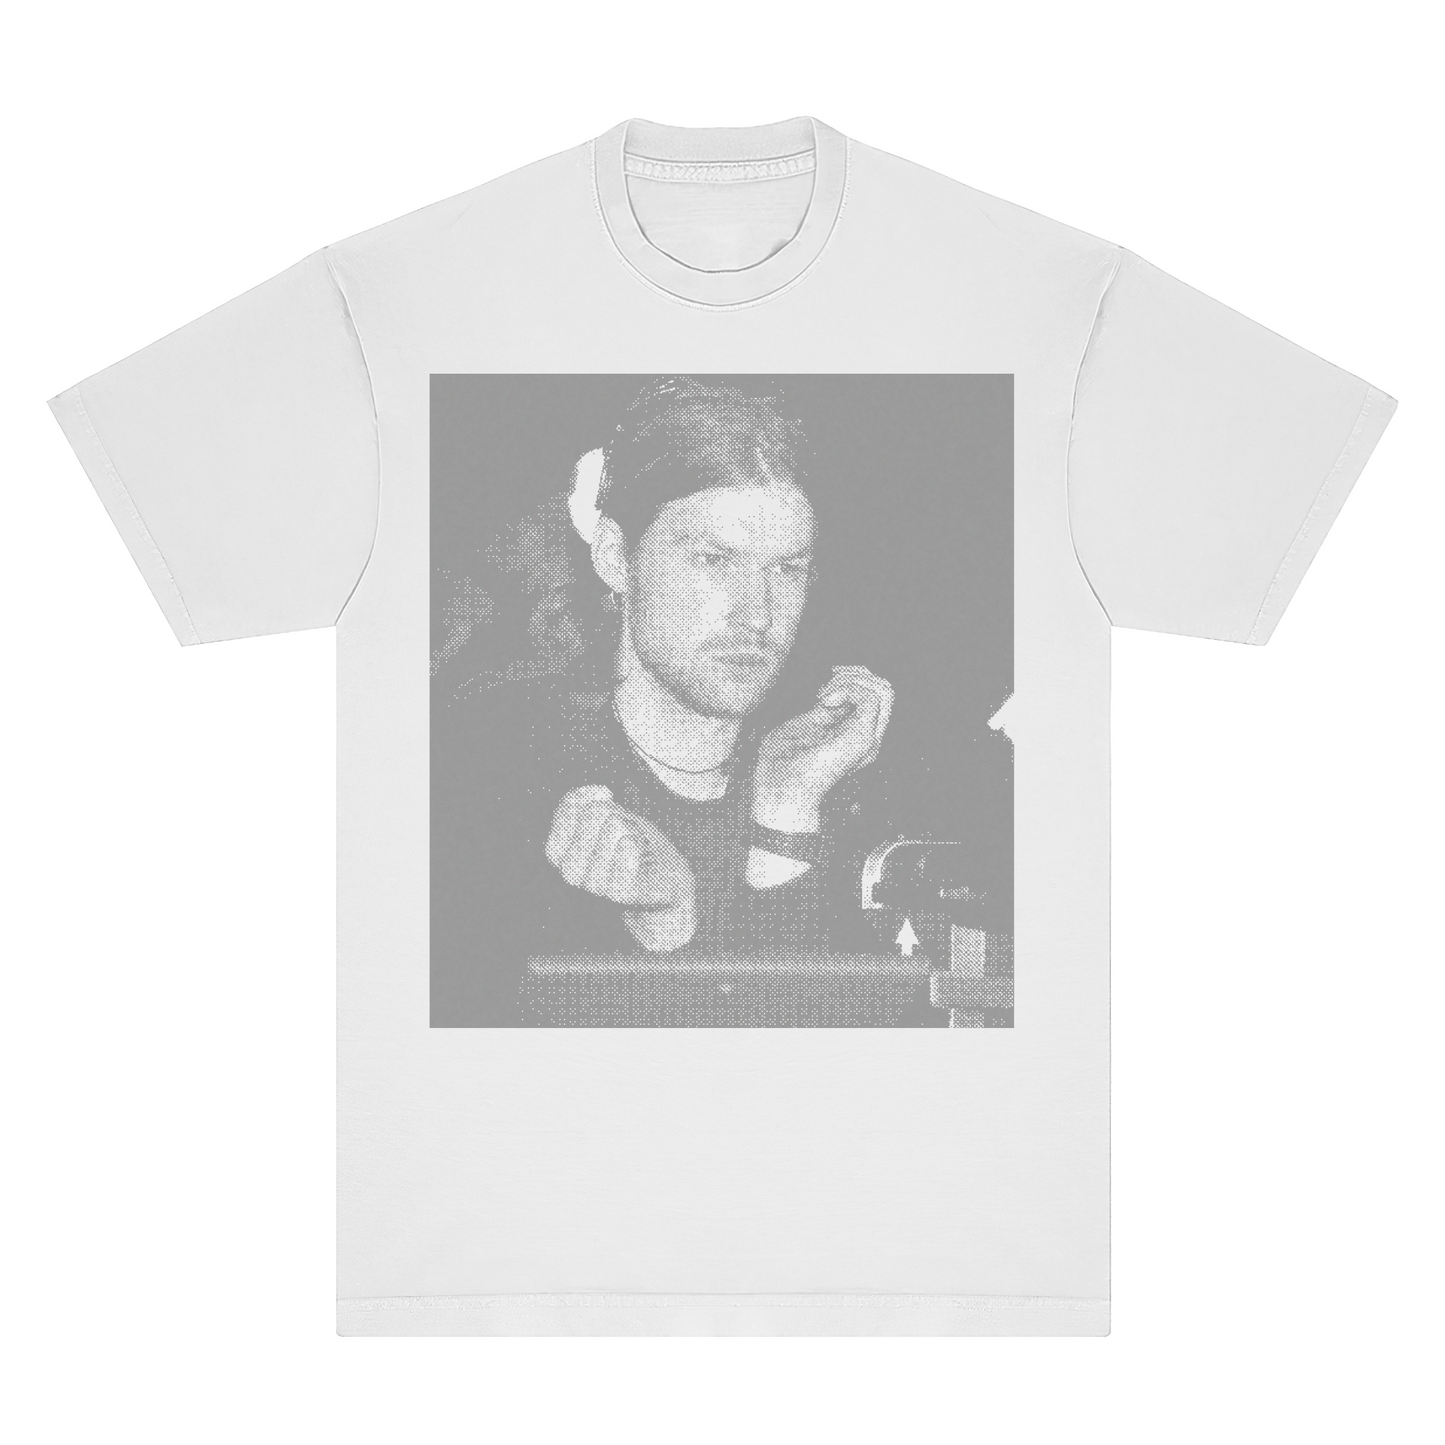 Aphex Twin Portrait Ringspun T-Shirt - Wine, Black & White - Comfort Colors 100% Cotton